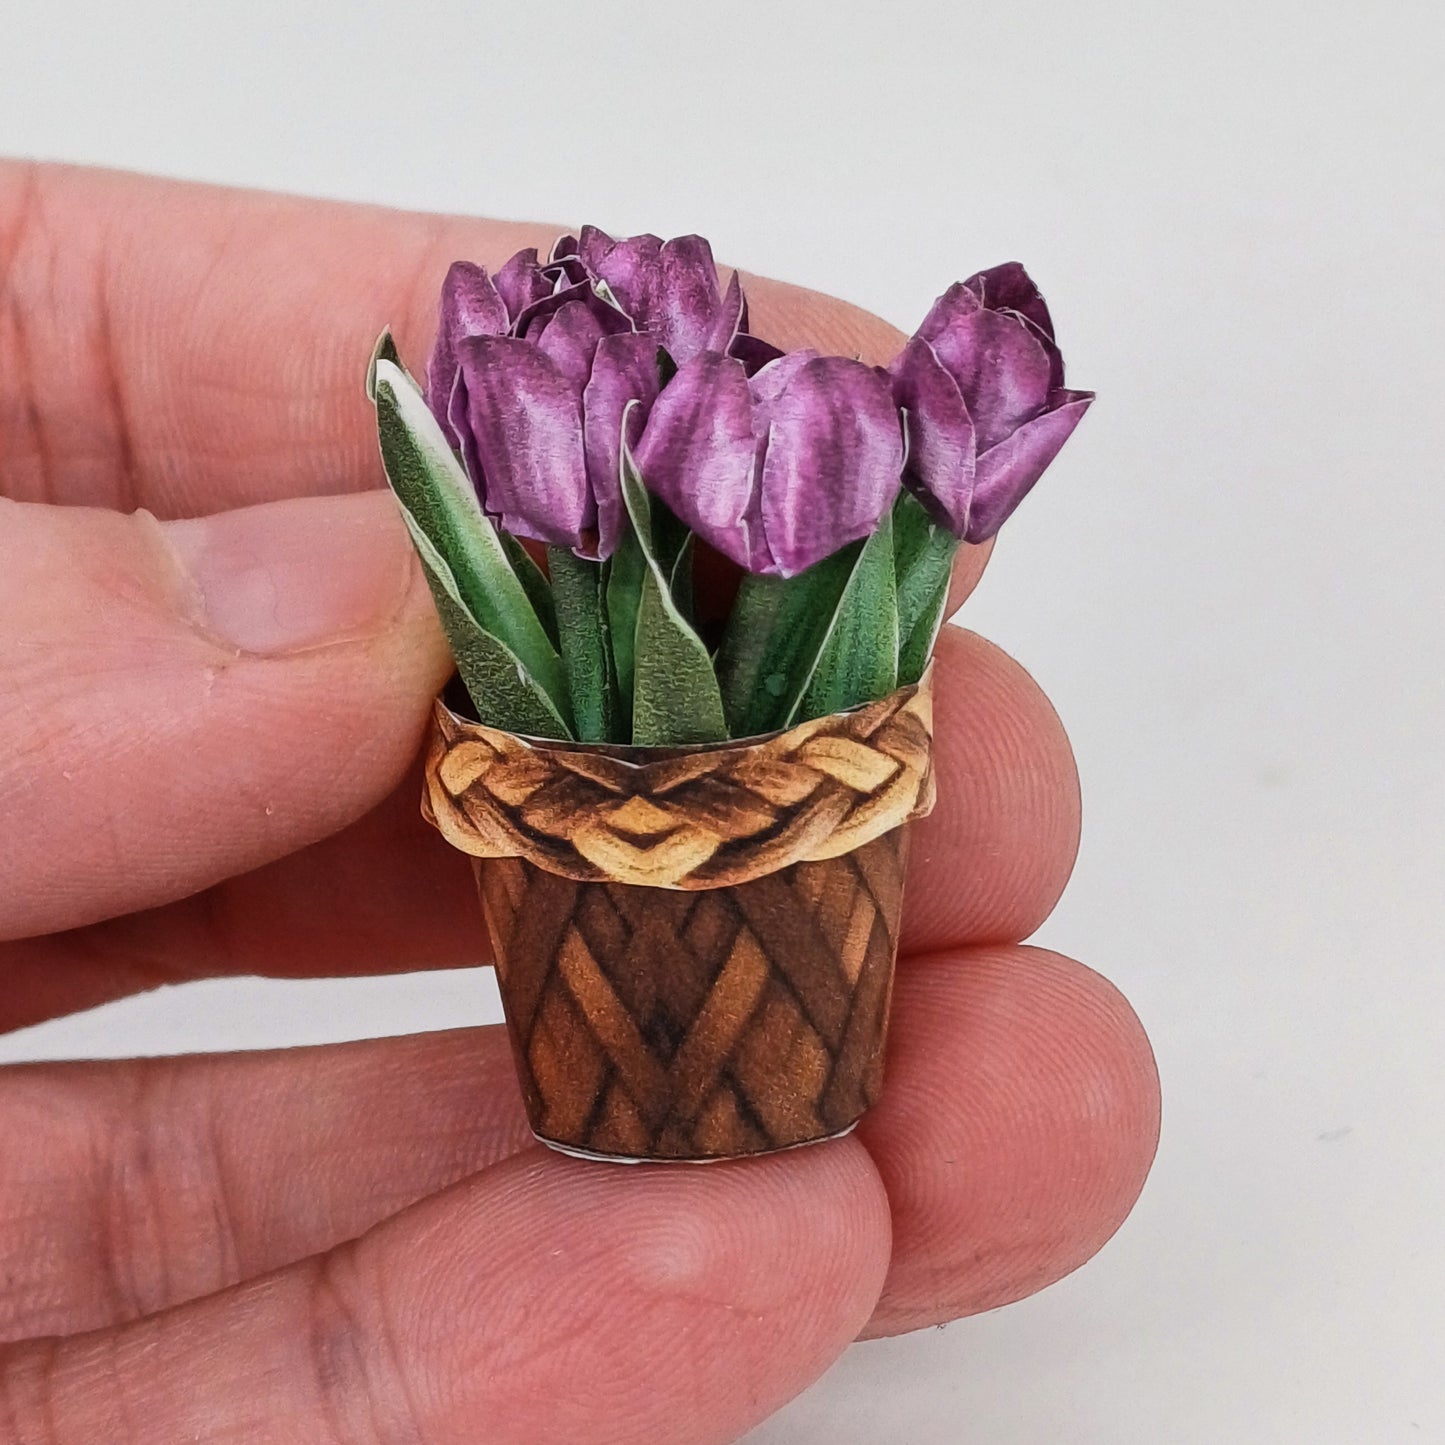 Miniatura 1:12 escala tulipanes para la impresión y artesanías